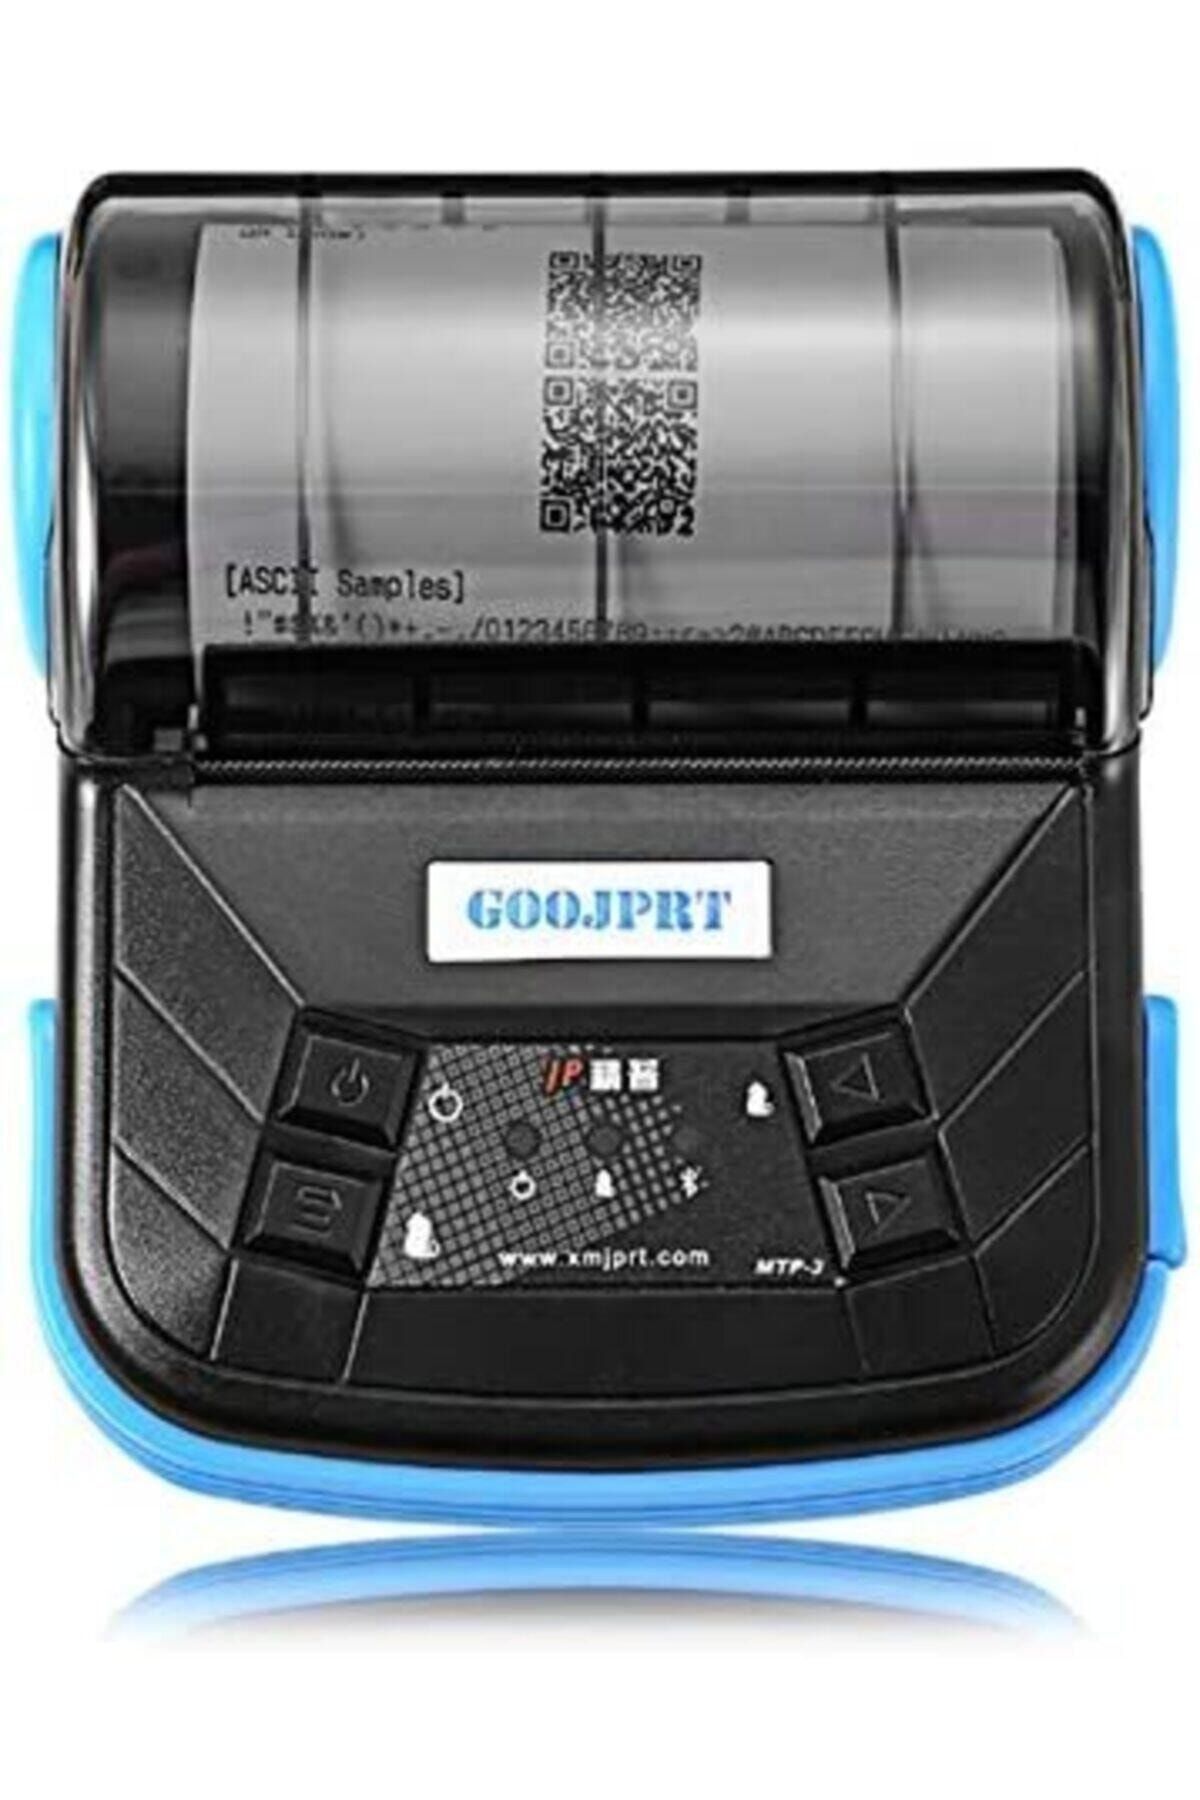 Goojprt Mtp 3 80mm Bluetooth Taşınabilir Termal Fiş Ve Barkod Yazıcı Fiyatı Yorumları Trendyol 6579